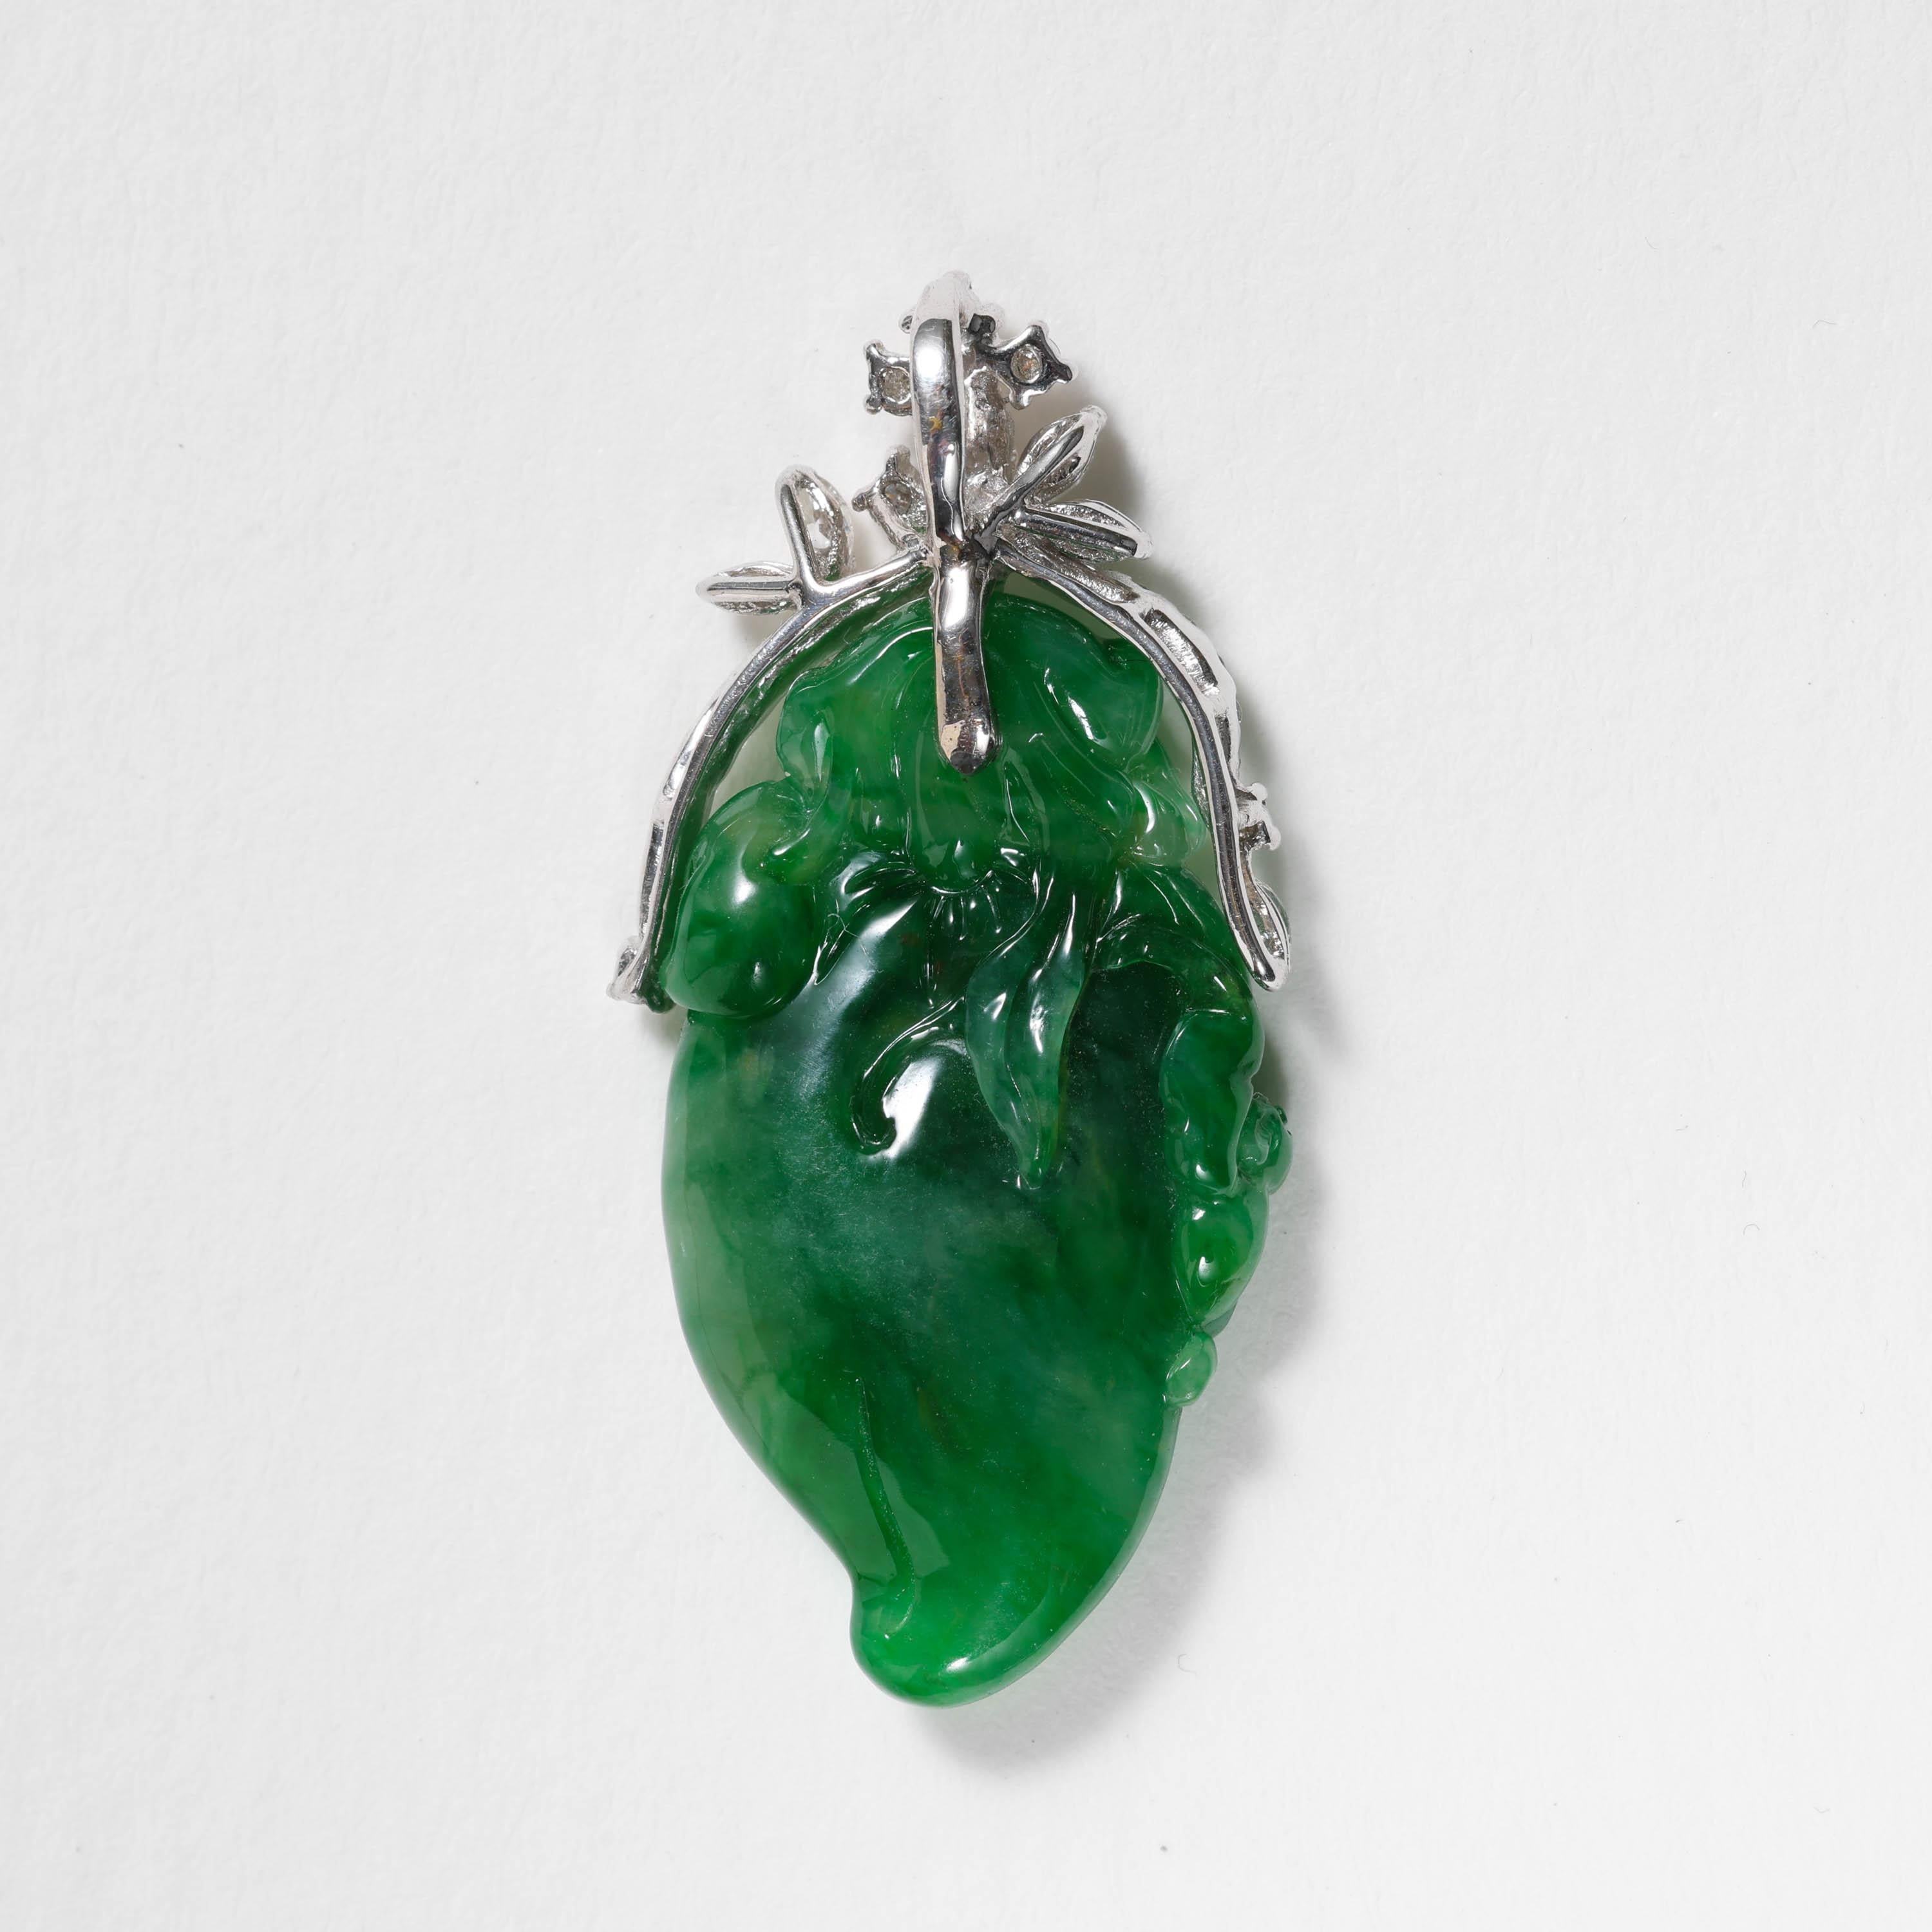 La riche jadéite birmane certifiée naturelle et non traitée, de couleur vert émeraude, a été sculptée de façon fantaisiste et magistrale en forme de piment avec des feuilles. Une adorable petite chauve-souris s'accroche au côté du poivre. Le symbole